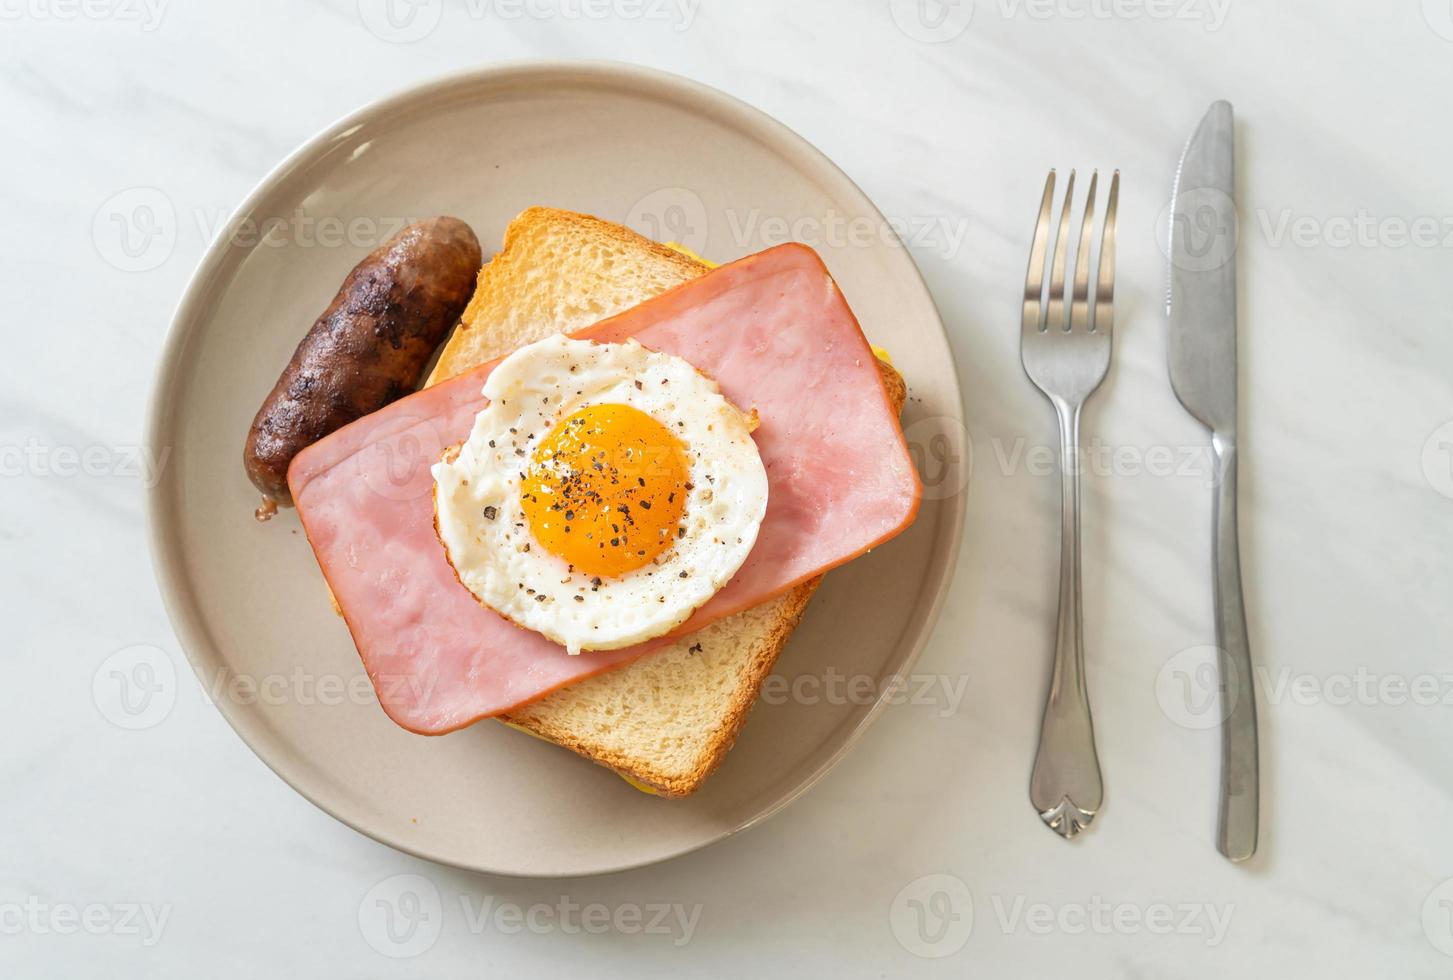 pão caseiro queijo torrado, presunto com cobertura e ovo frito com linguiça de porco no café da manhã foto